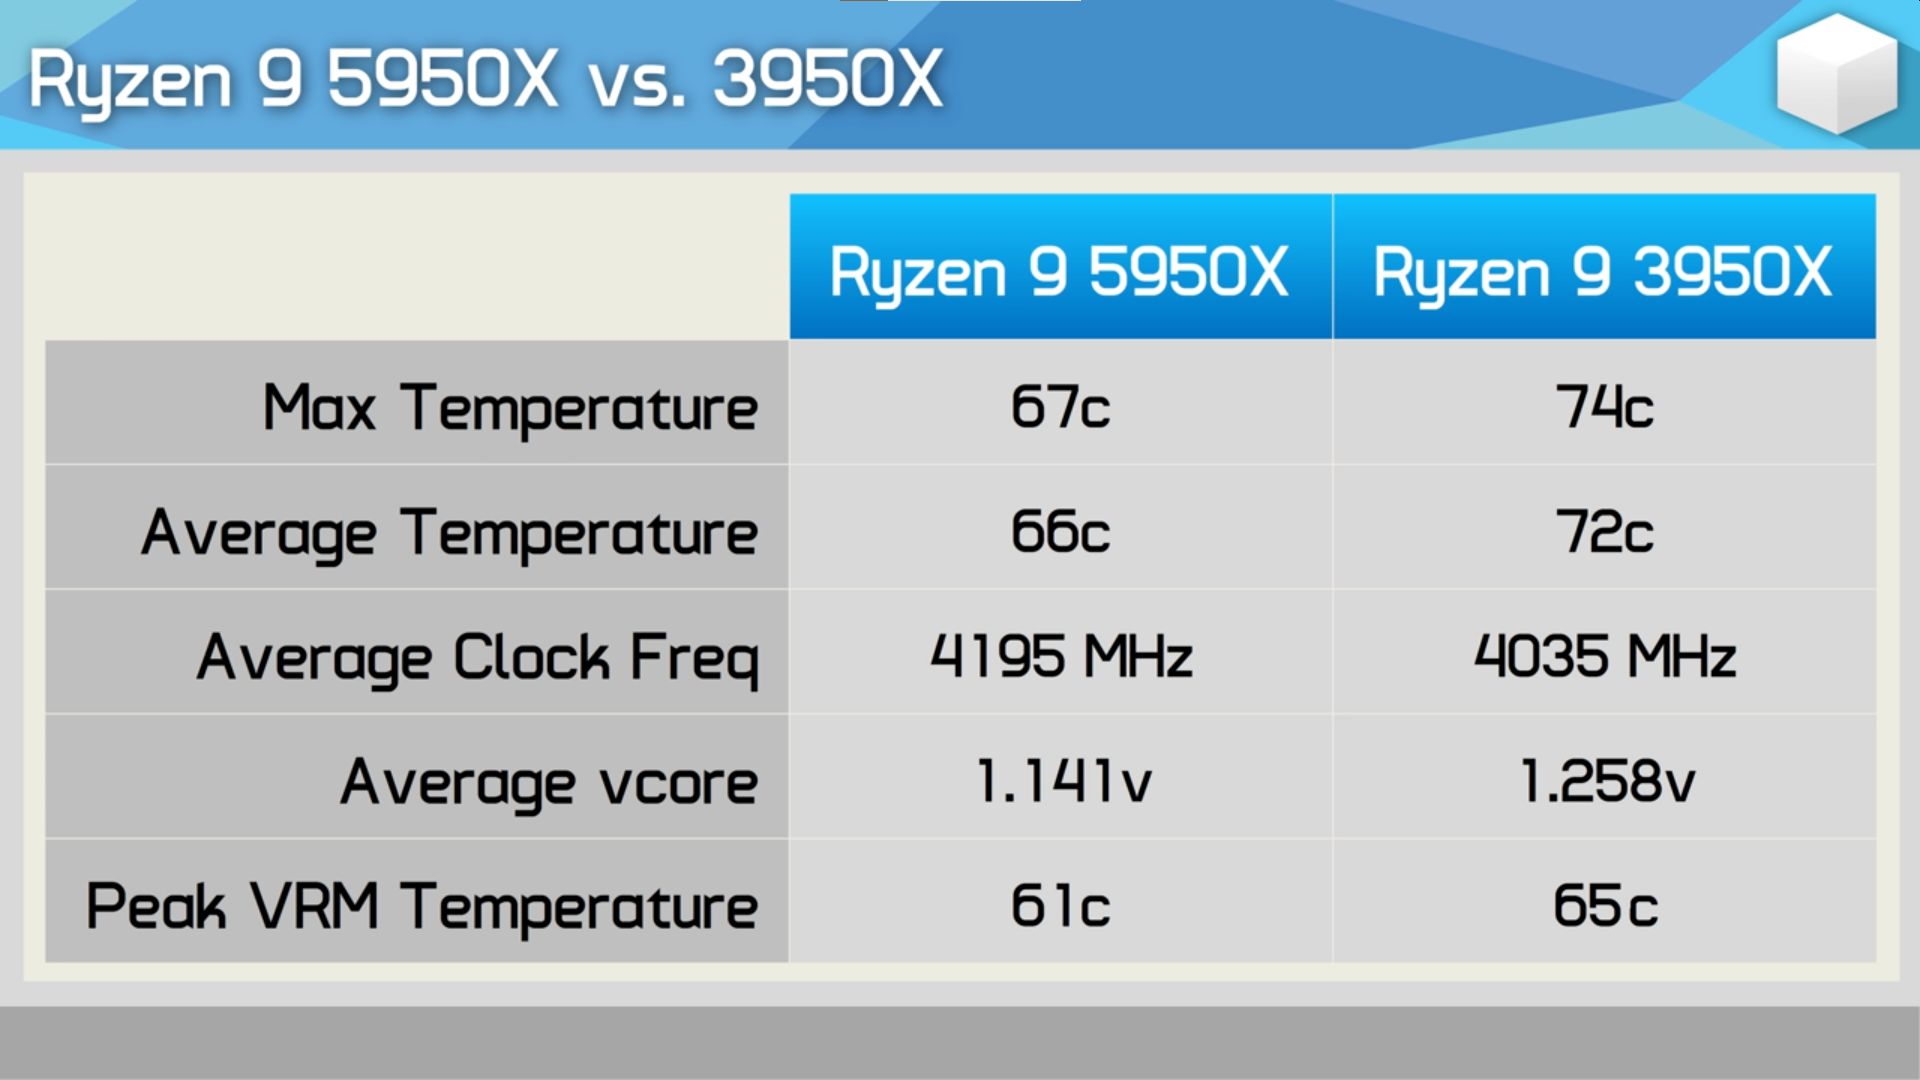 AMD Ryzen 5000 satışa sunuldu, İlk incelemeler geldi!